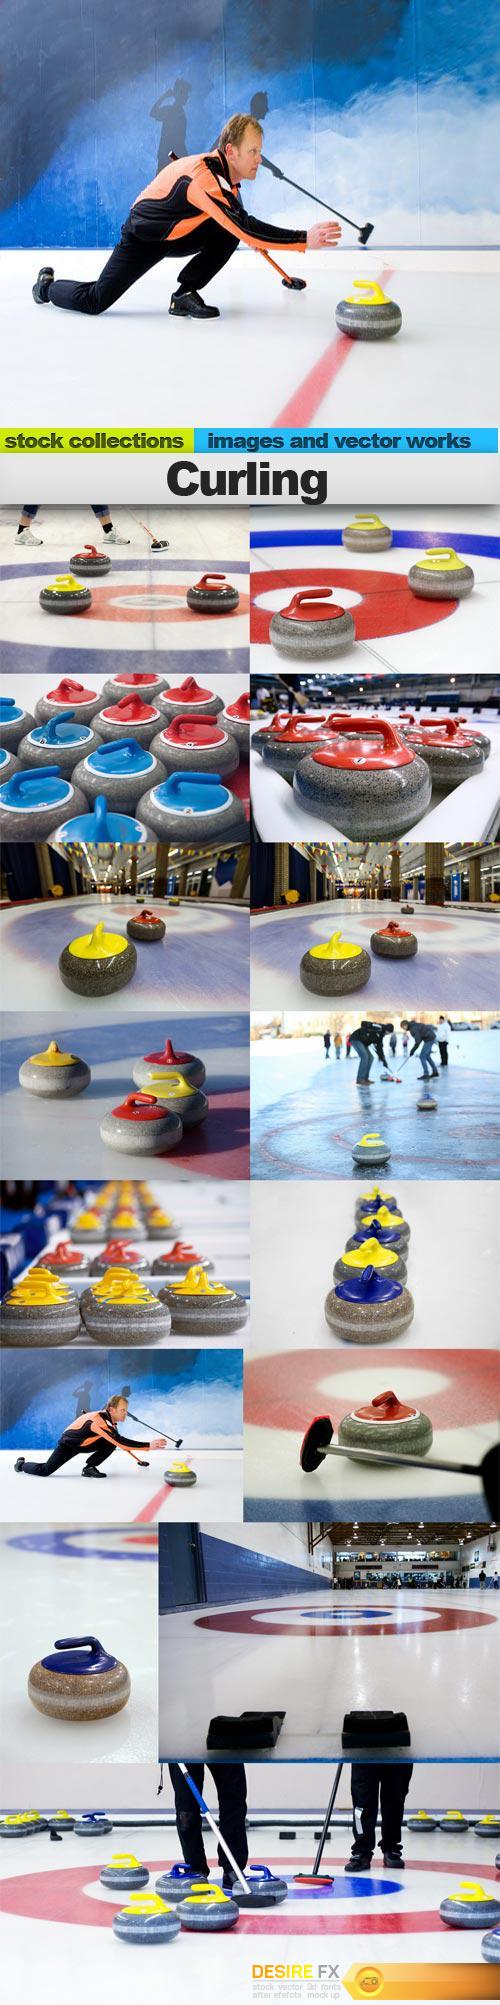 Curling, 15 x UHQ JPEG